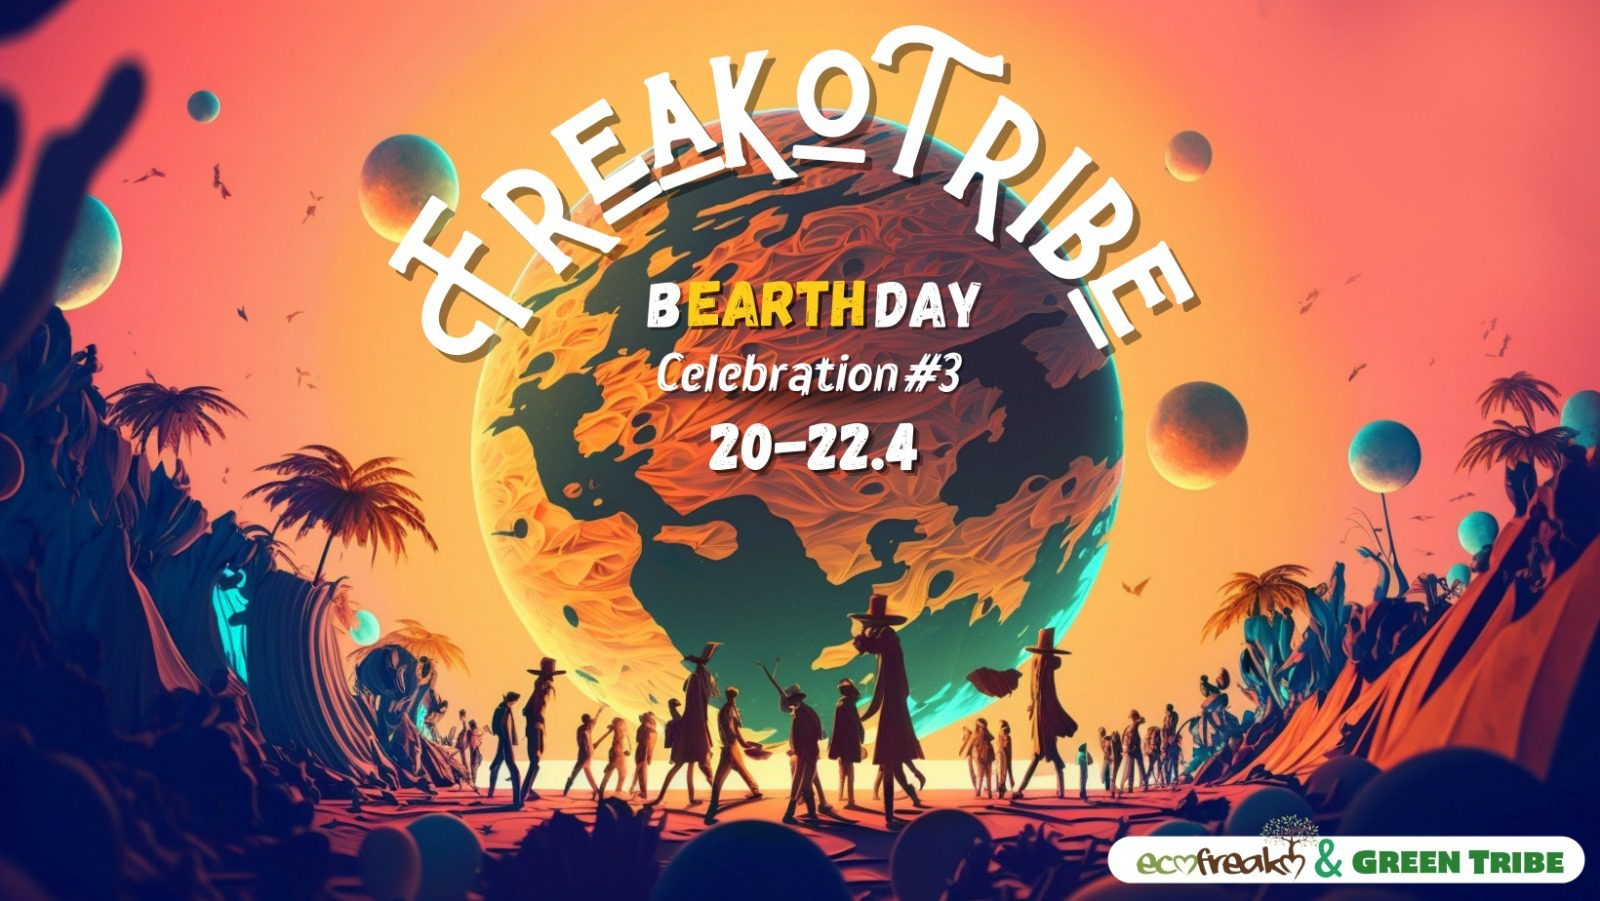 FreakoTribe B-EARTH-DAY Celebration #3 - חוגגים את הכדור שלנו